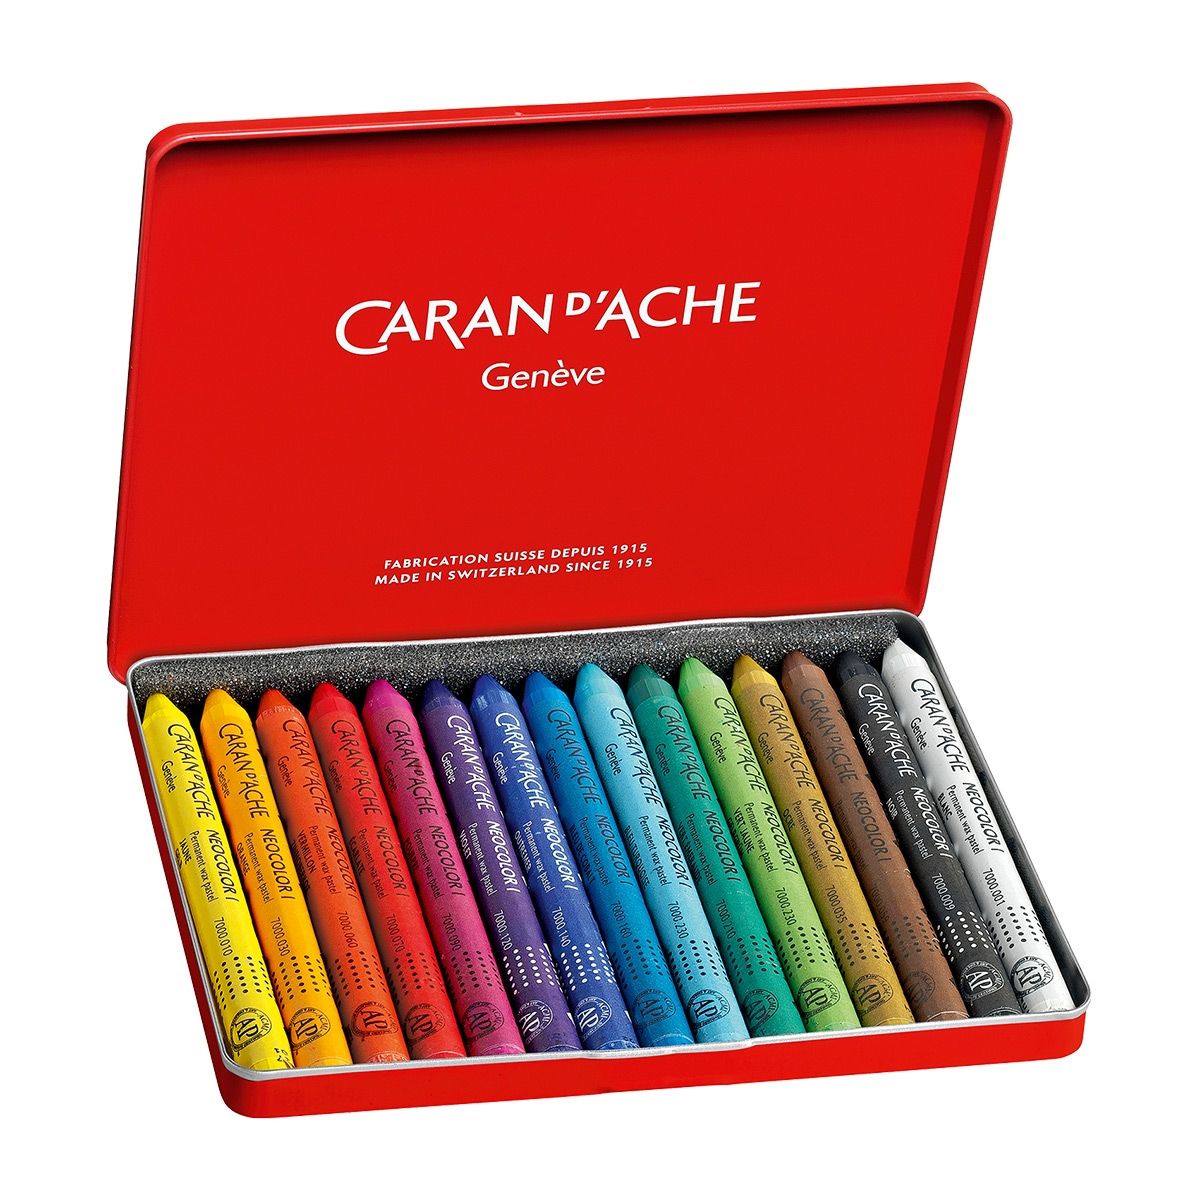 Caran D'Ache Neocolor I Permanent Wax Pastel Sets have an excellent range of colors